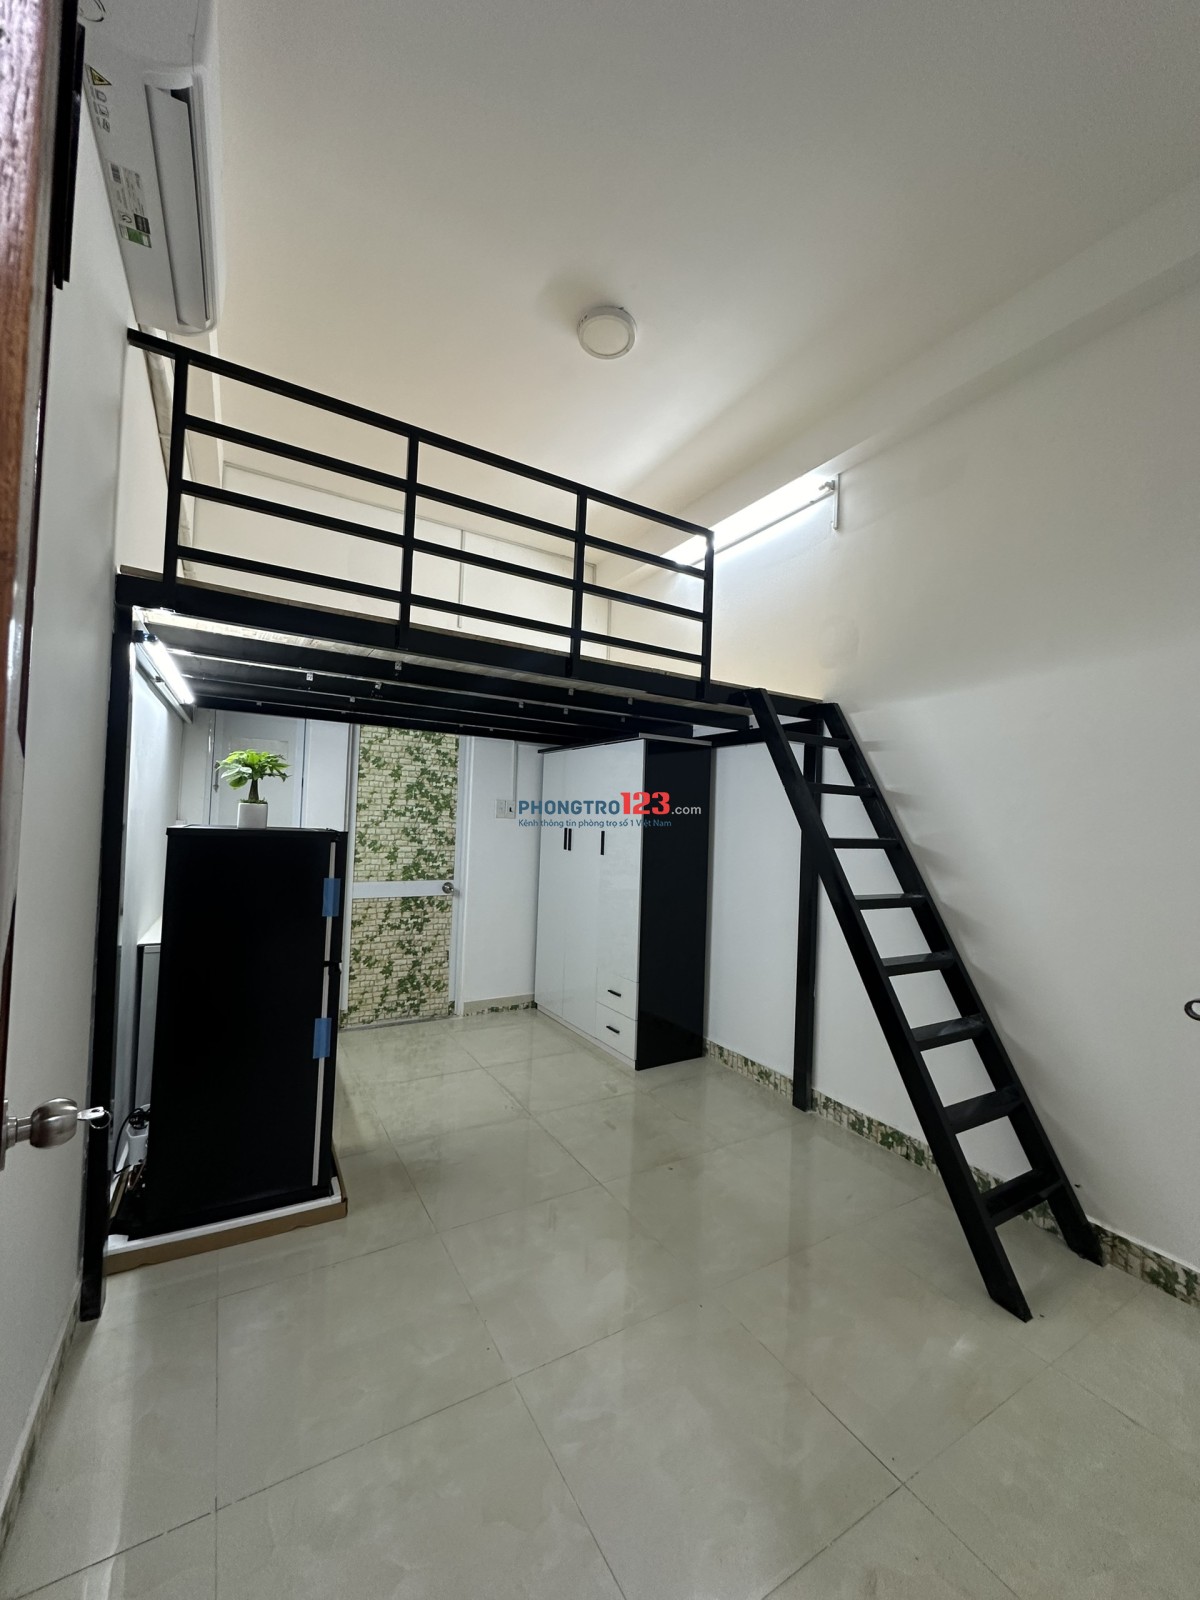 Cho thuê phòng trọ, diện tích 25m2, đã trang bị đầy đủ nội thất, tại địa chỉ Nguyễn Trọng Tuyển